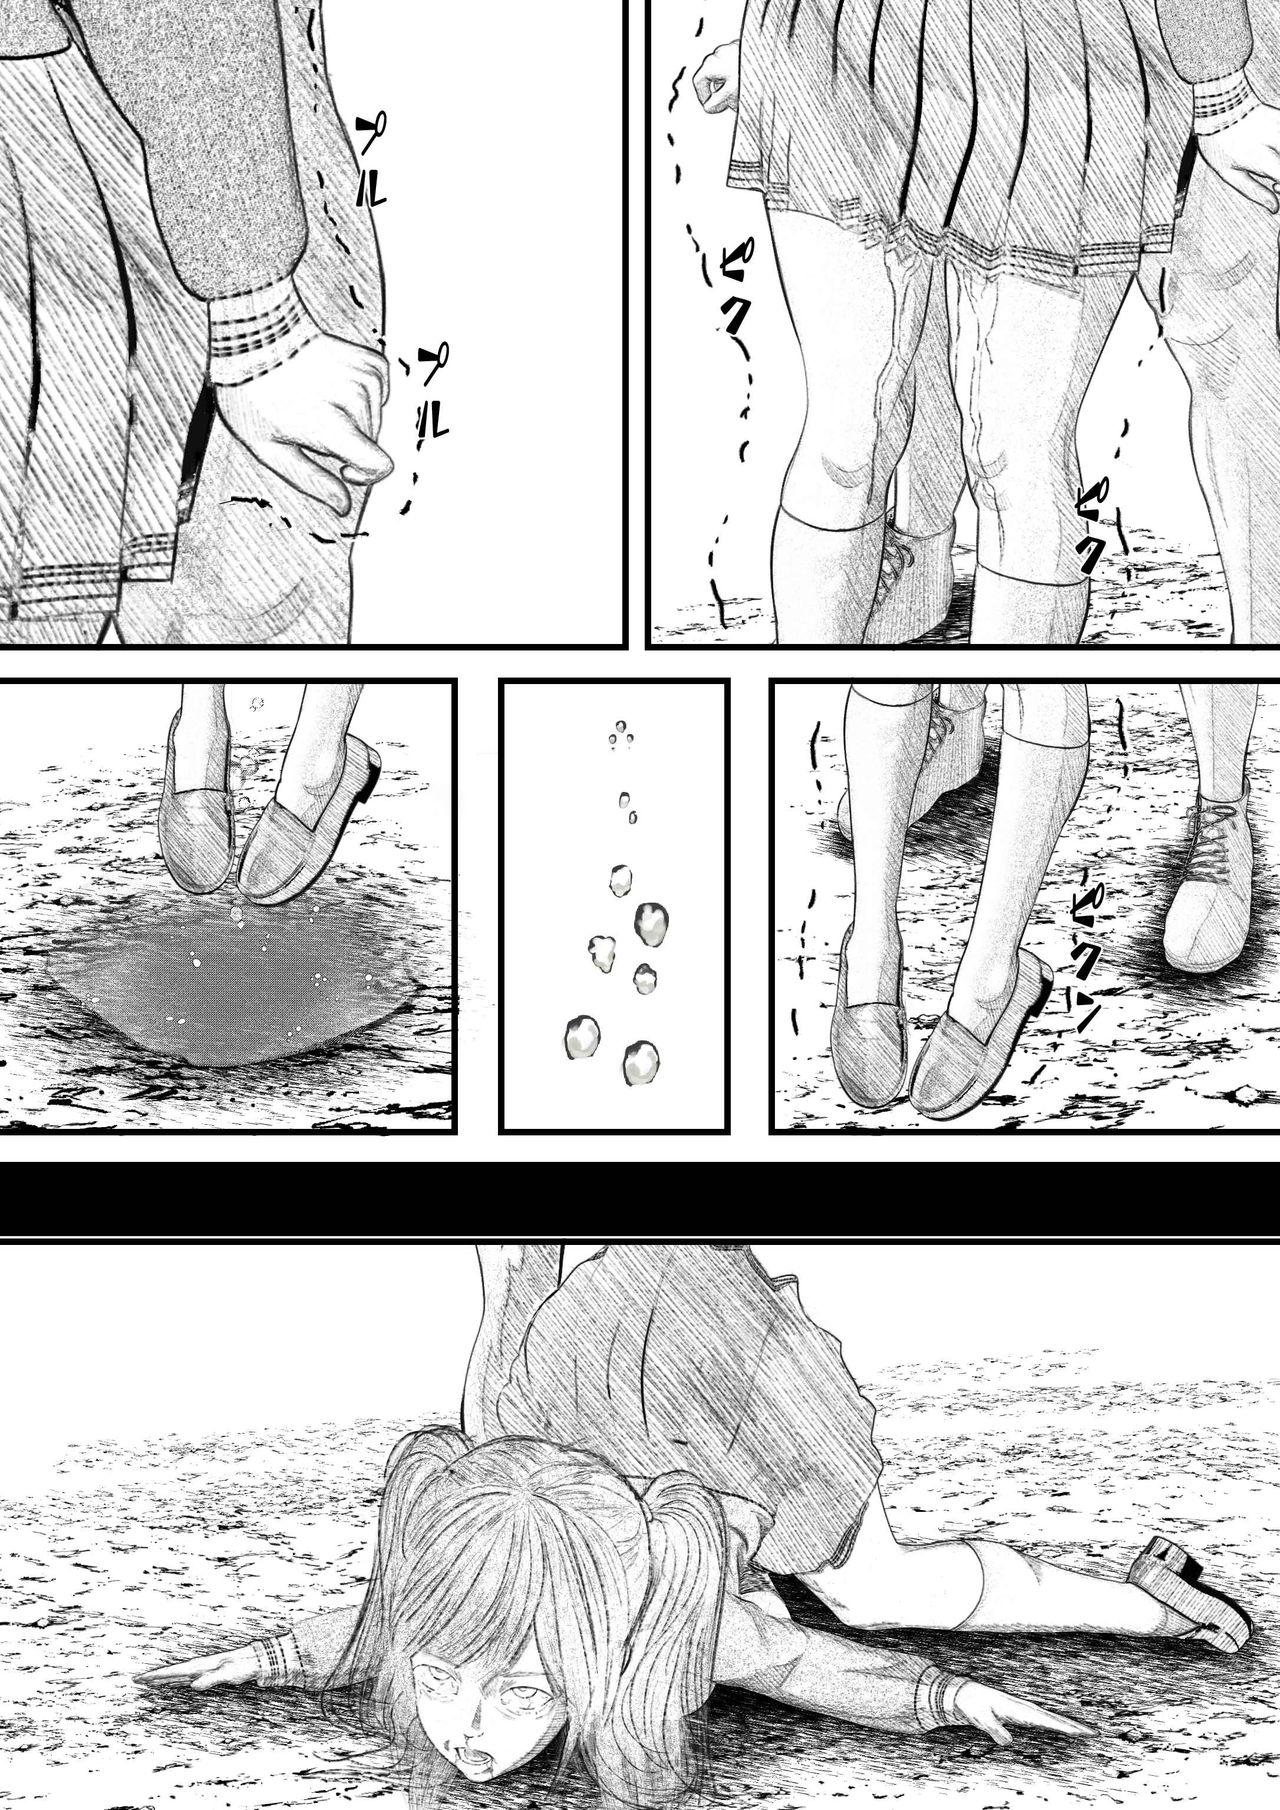 Outdoors Merii! Kubishimemasu! 2020 Kubishime Manga Seisakuchuu 4 - Original Stroking - Page 3